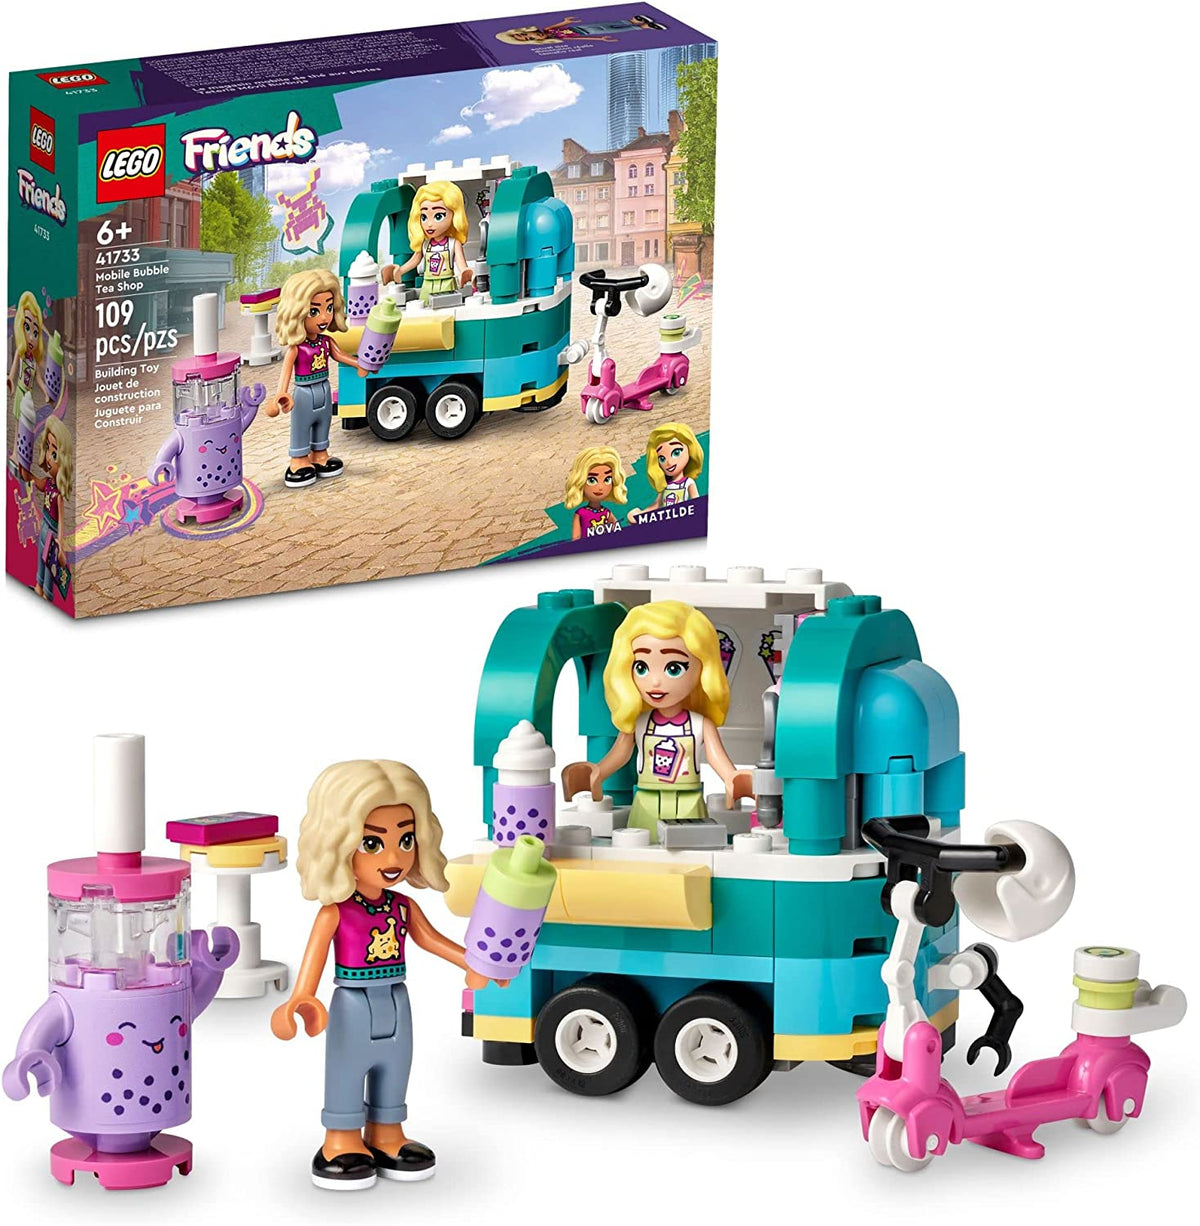 Lego 41733 Mobile Bubble Tea Shop